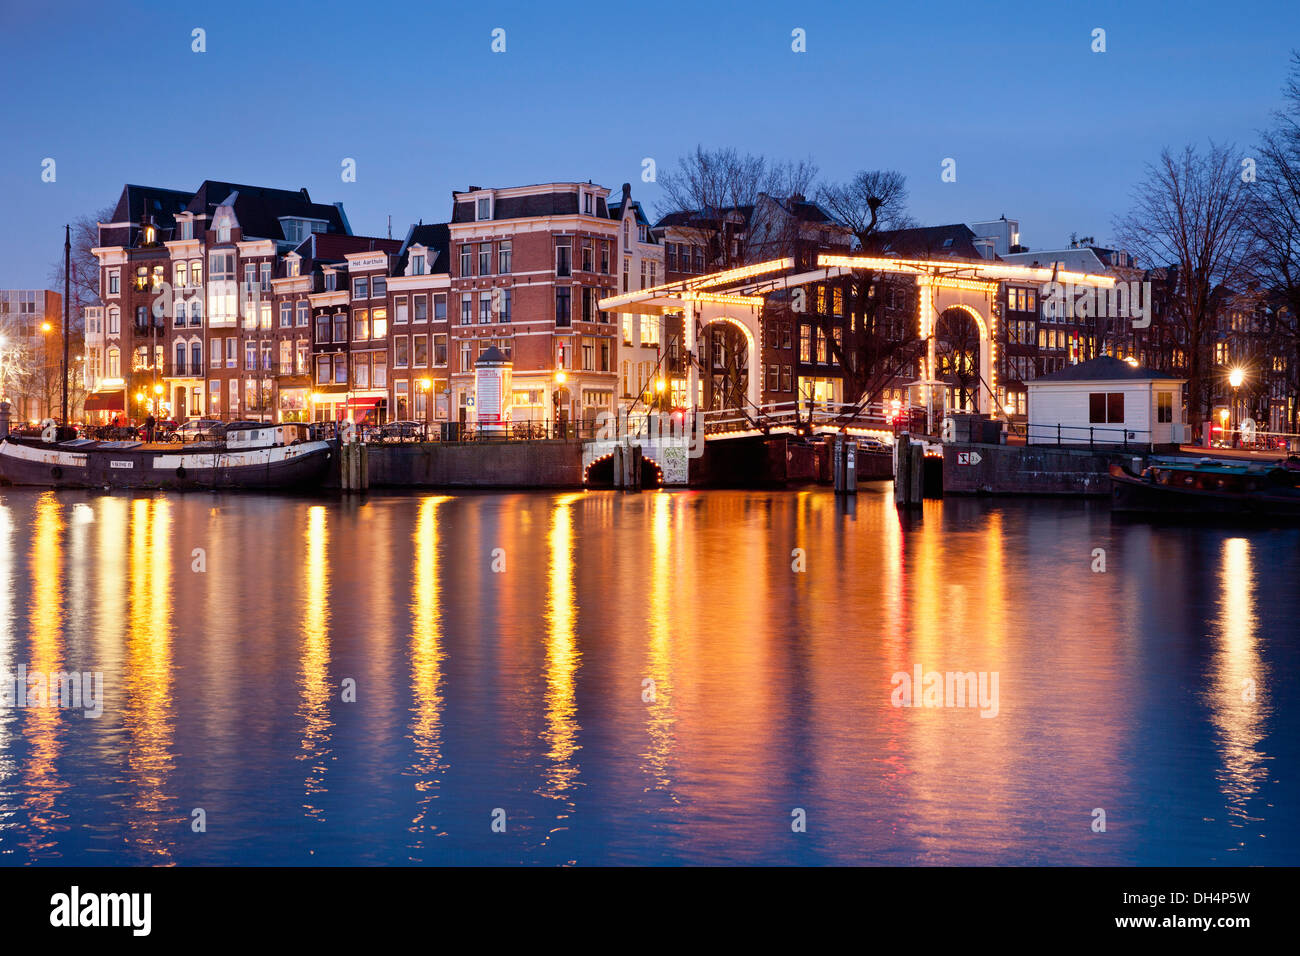 Pays-bas, Amsterdam, pont-levis, près de la rivière Amstel sur canal appelé Nieuwe Herengracht. Twilight Banque D'Images